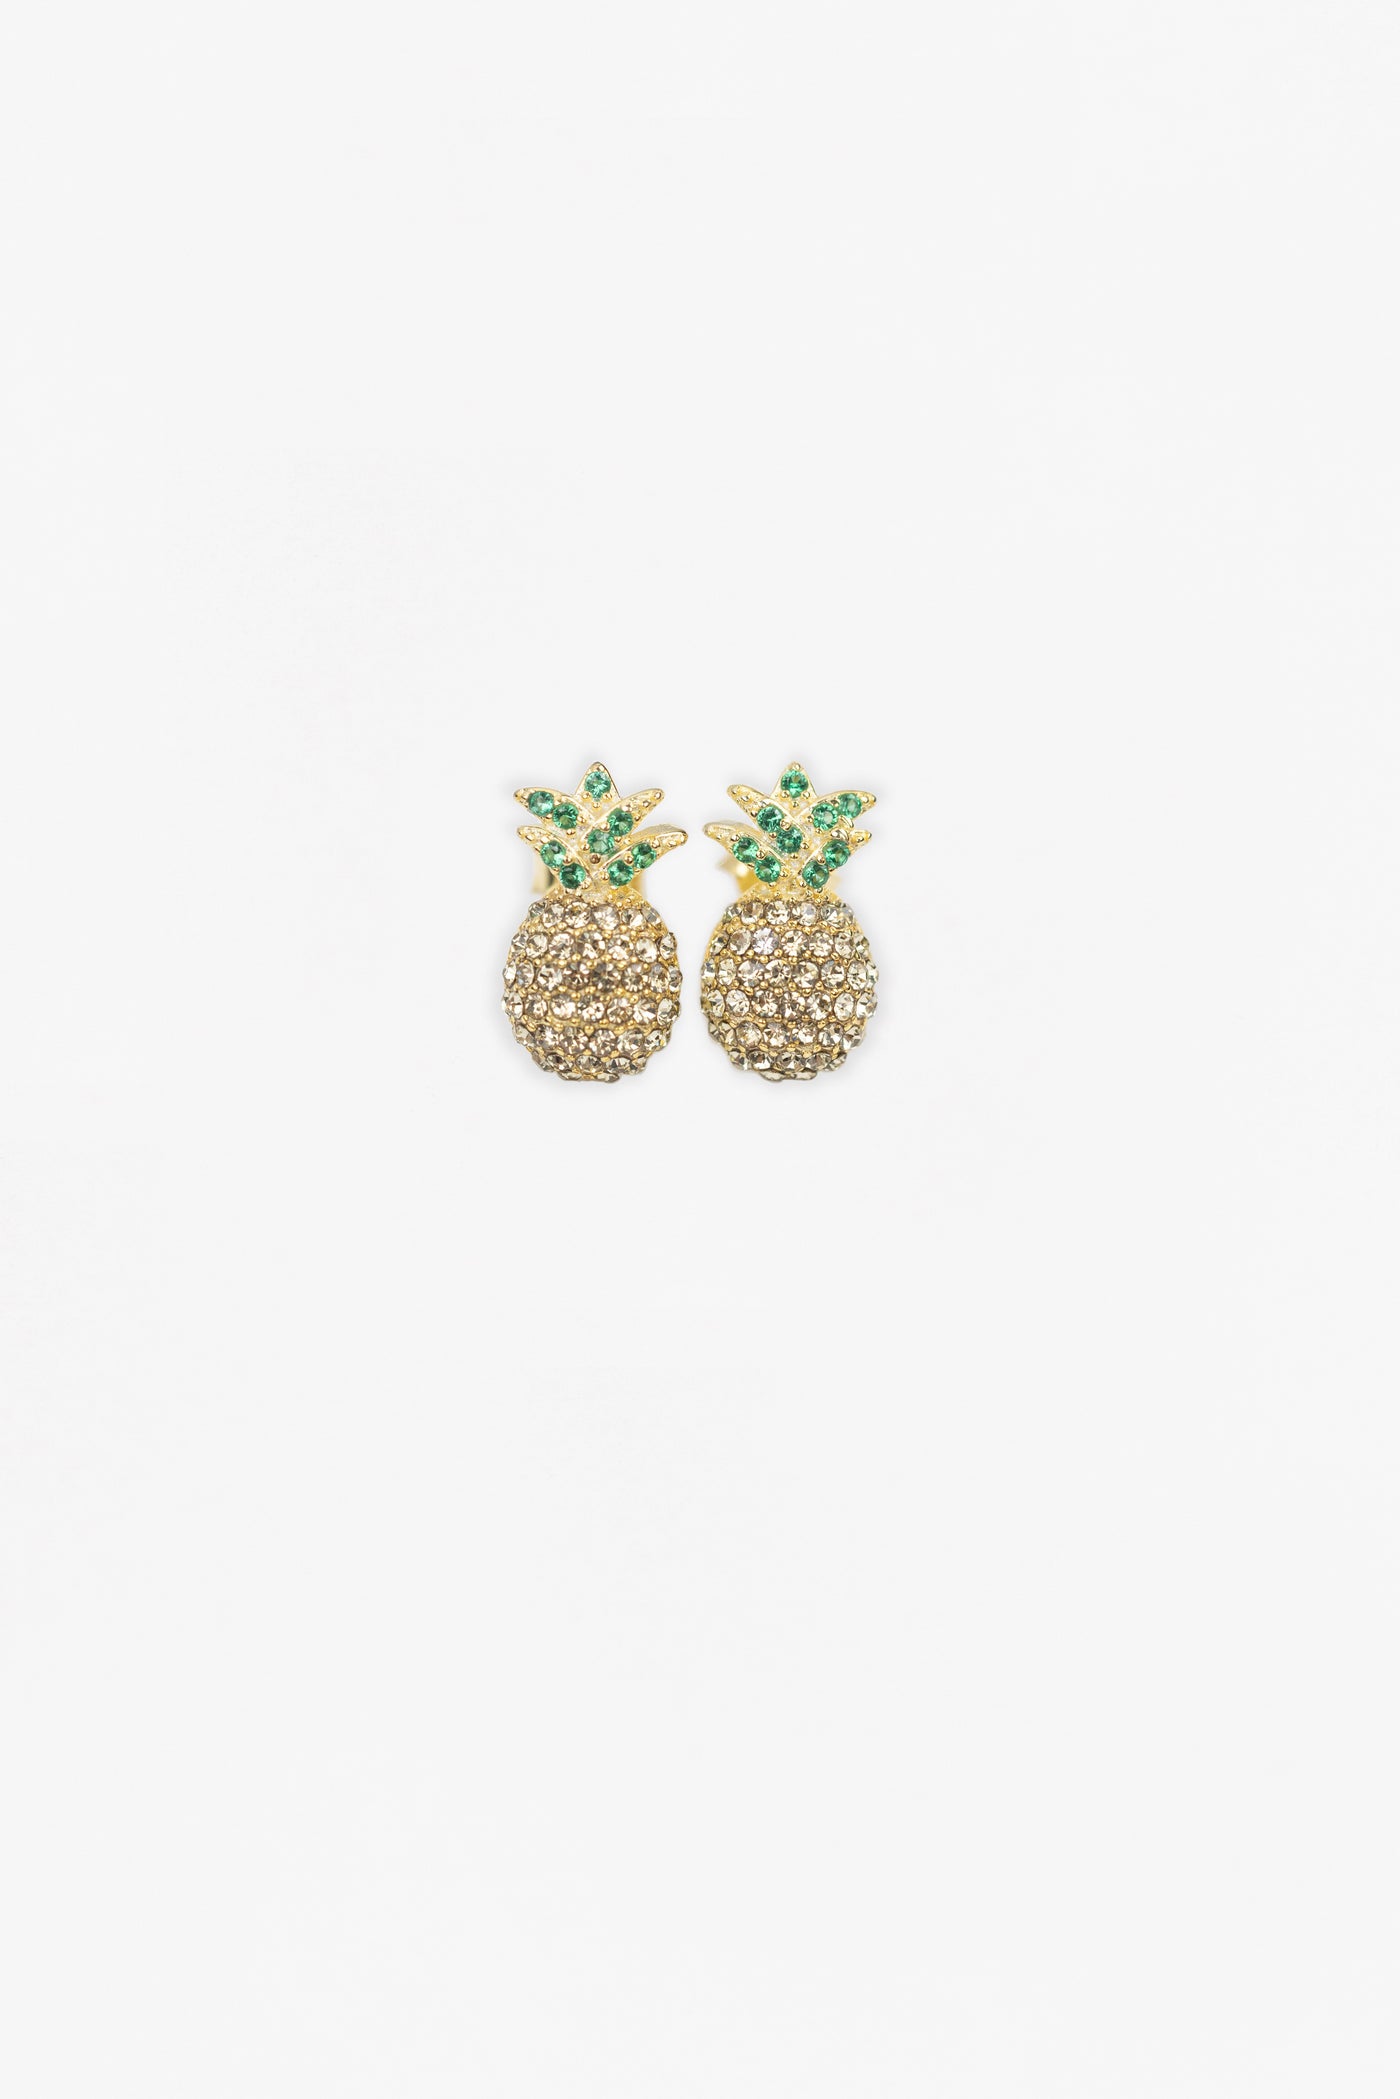 Pineapple Crystal Sterling Silver Earrings